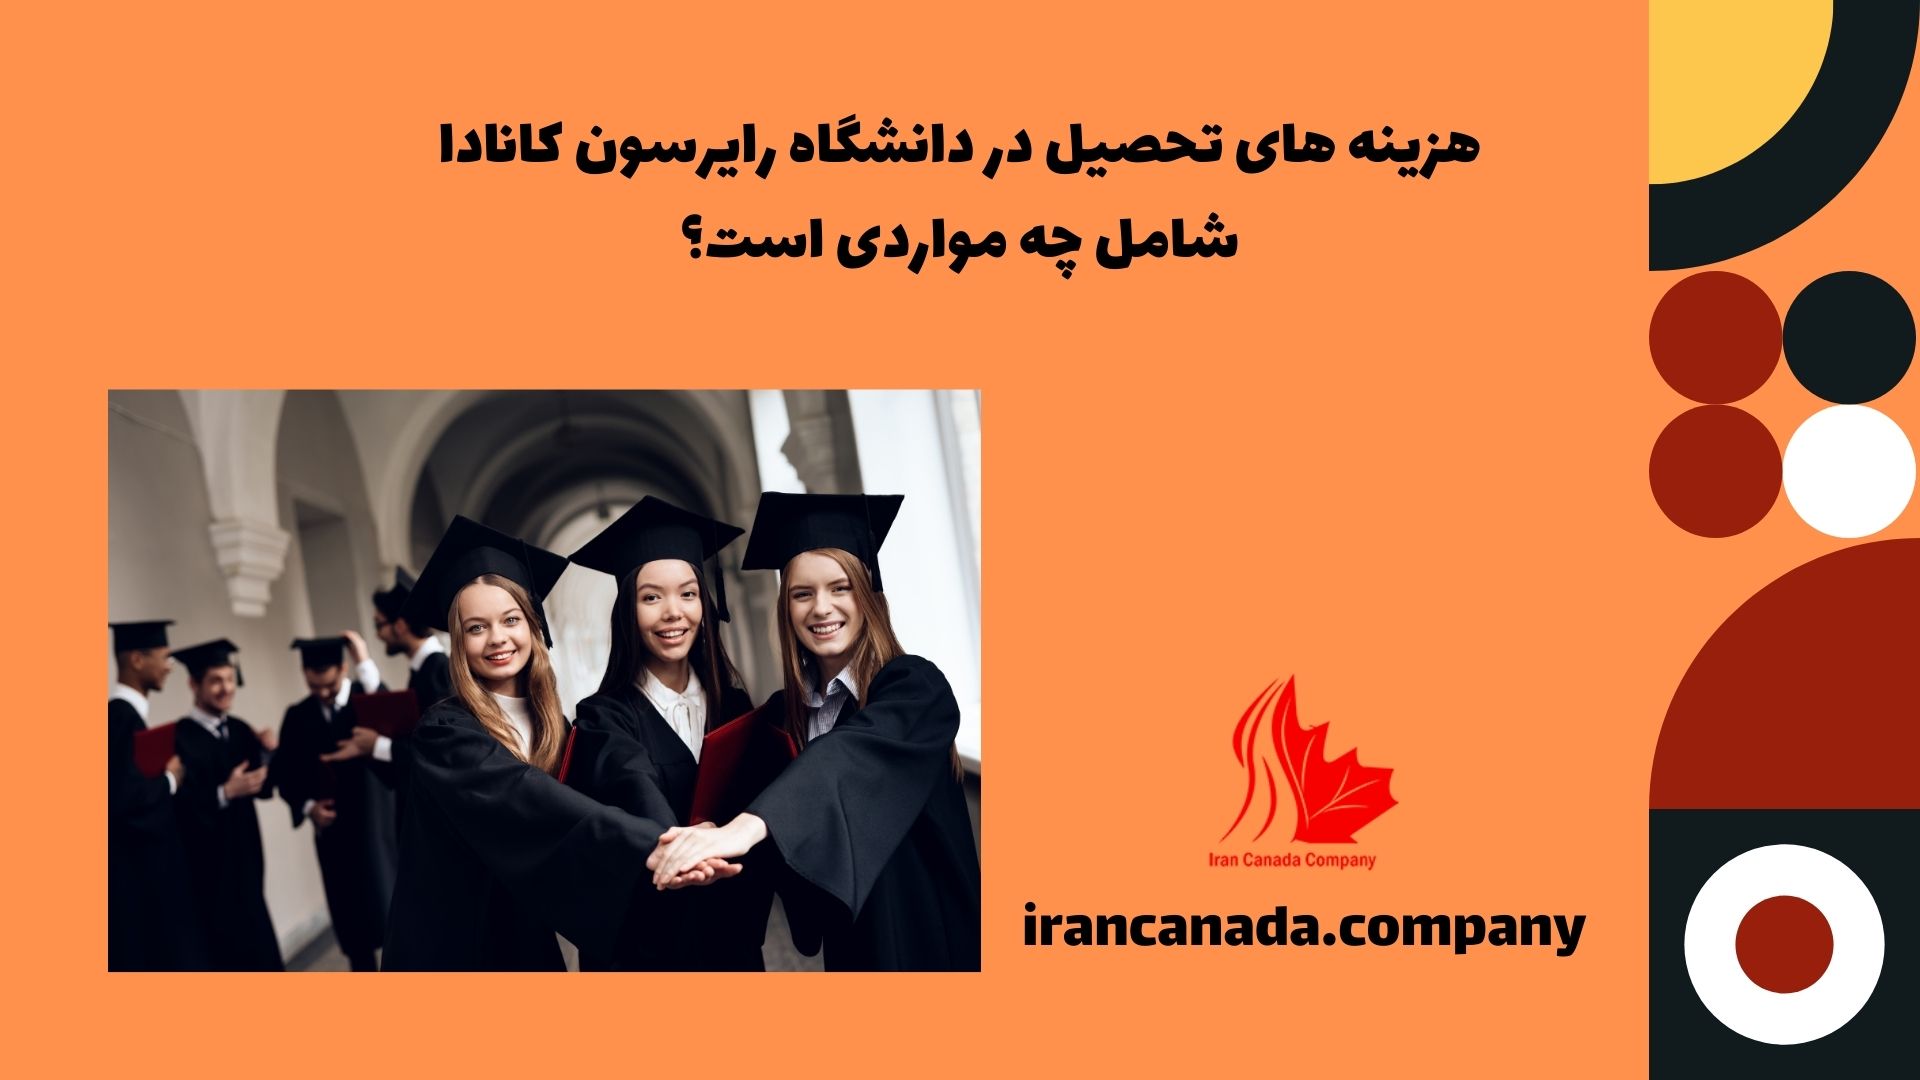 هزینه های تحصیل در دانشگاه رایرسون کانادا شامل چه مواردی است؟